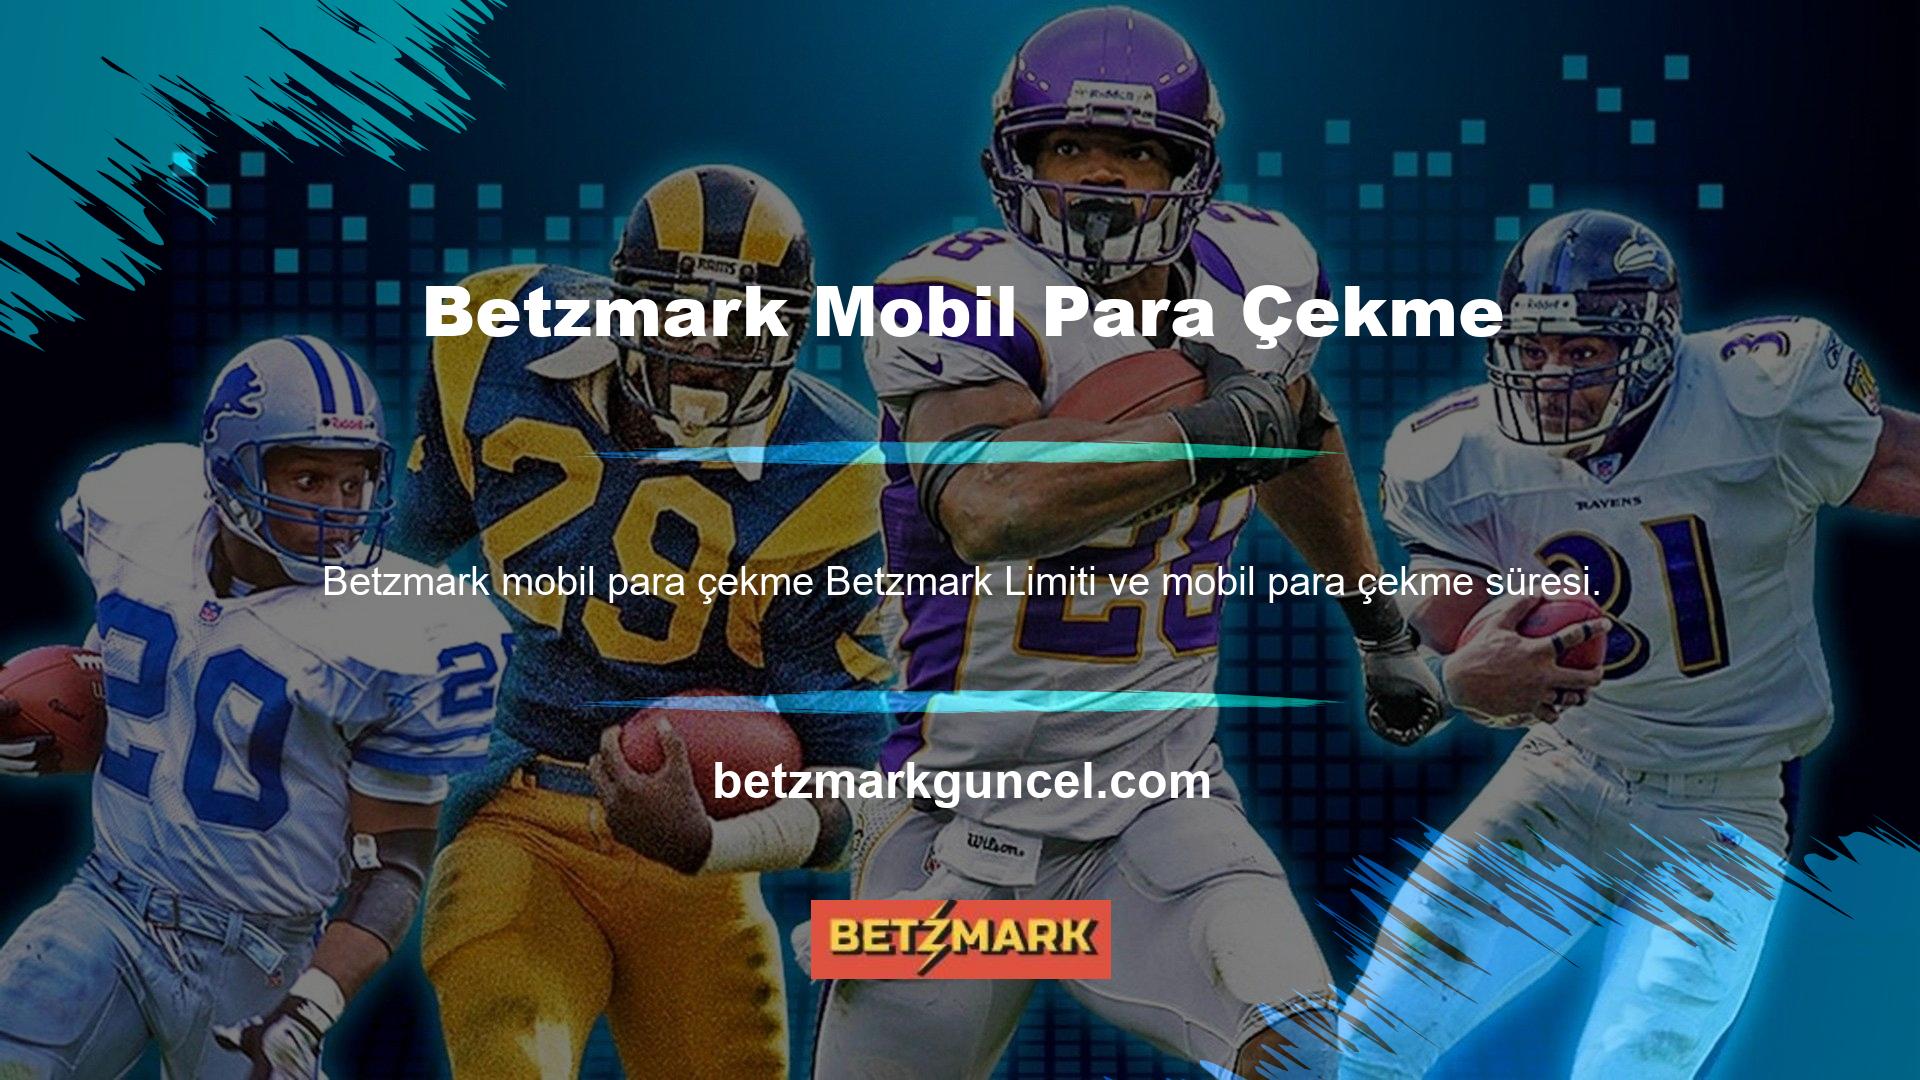 Bugünkü kapsamlı incelememizde Betzmark mobil para çekme limiti bahis yöntemleri ve casino sertifikaları hakkında merak ettiğiniz soruları tam olarak sunacağız